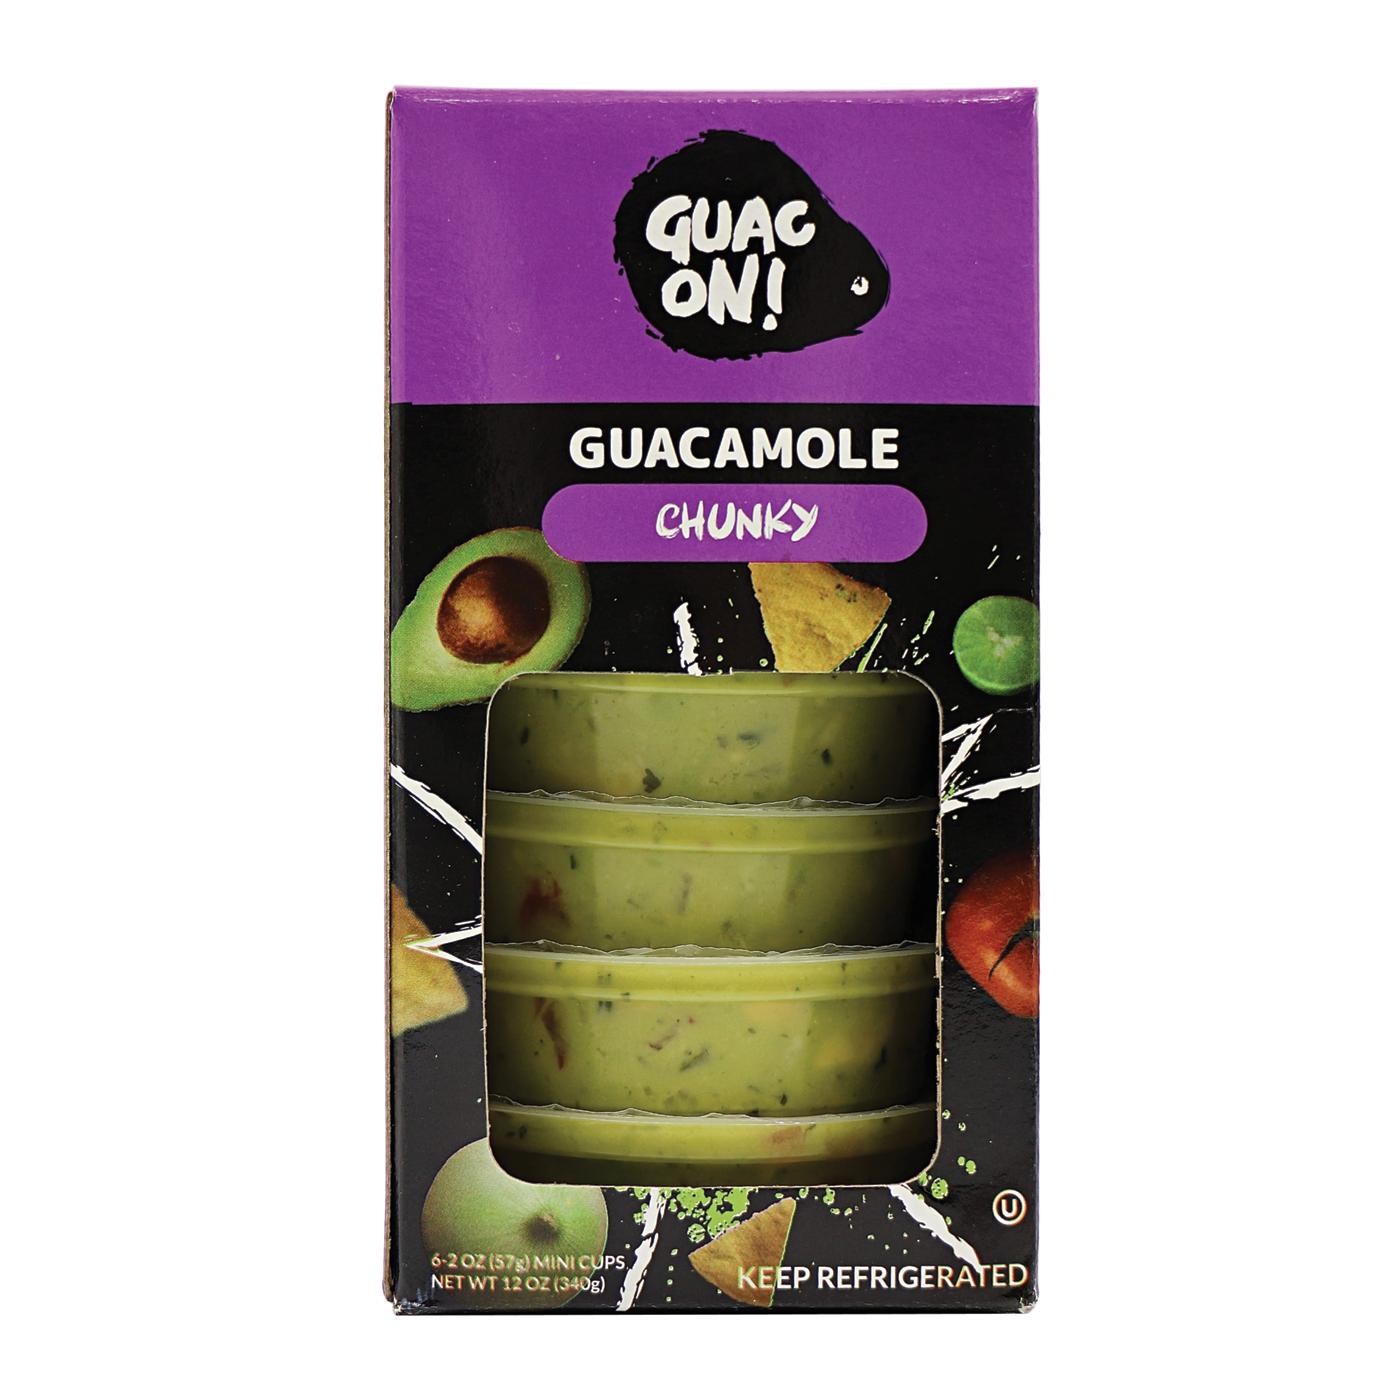 Guac On! Chunky Guacamole Mini Cups; image 1 of 3